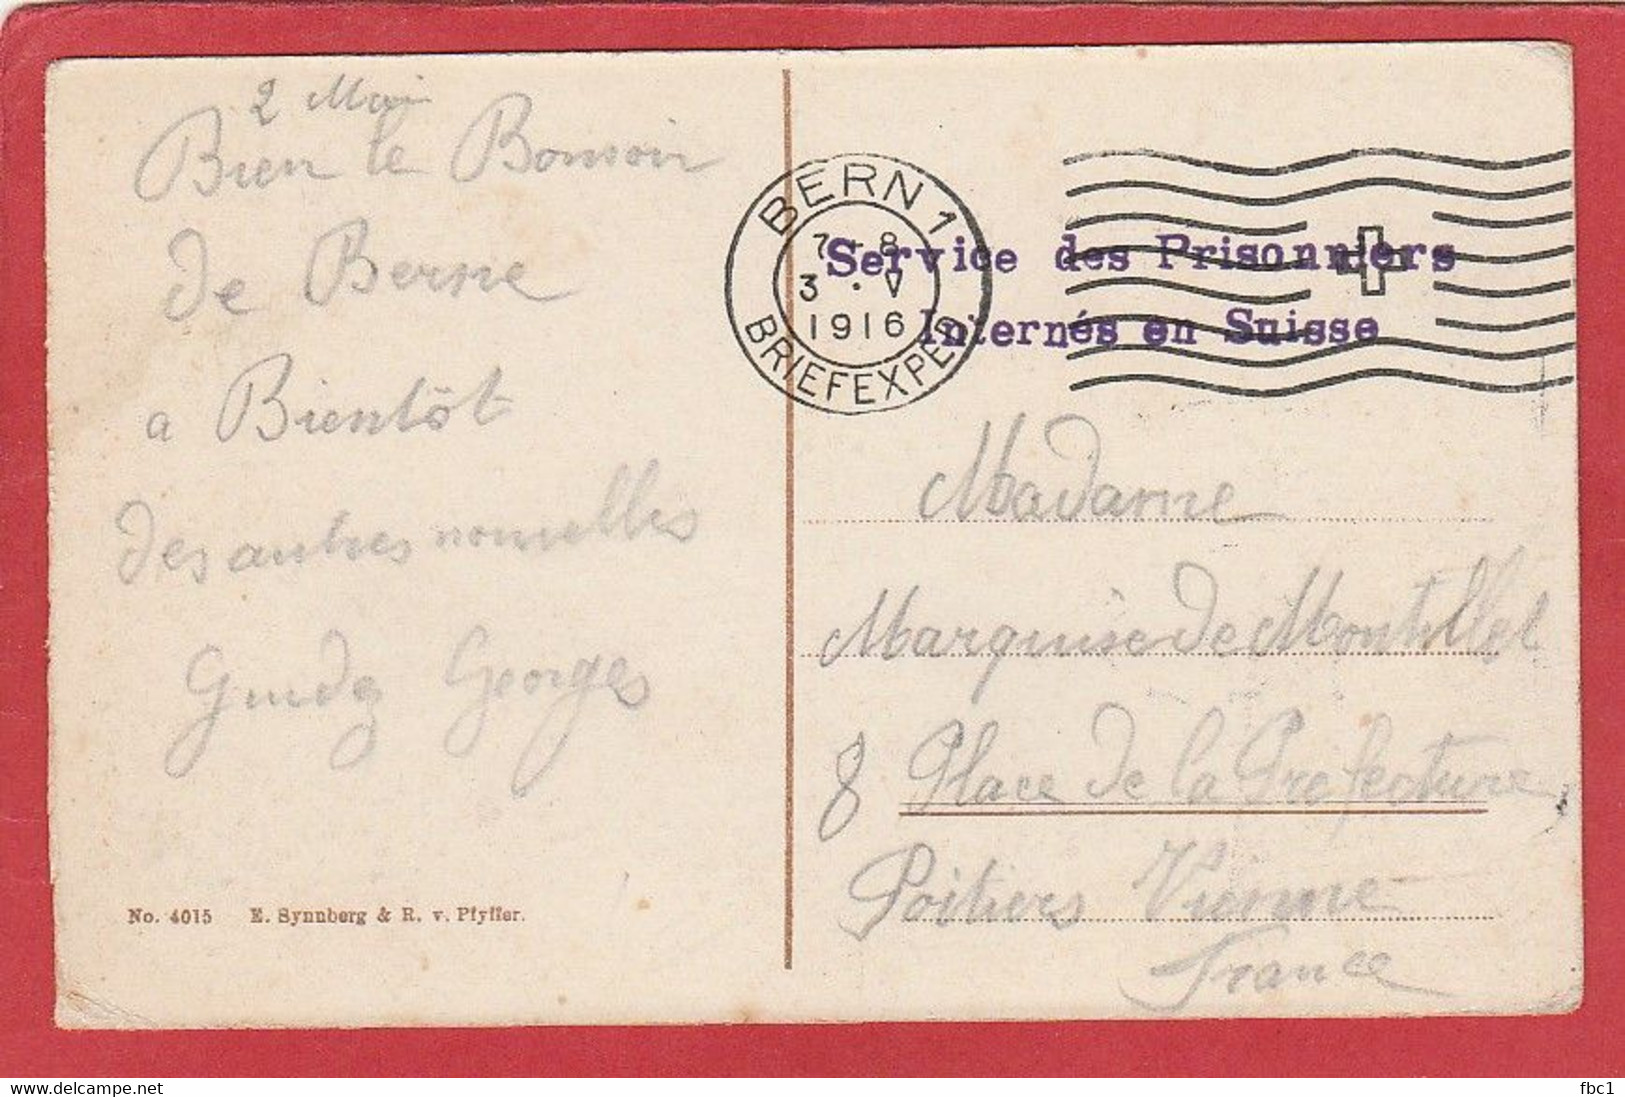 Carte En Franchise - Service Des Prisonniers Internés En Suisse - Bern - 1916 - Portofreiheit